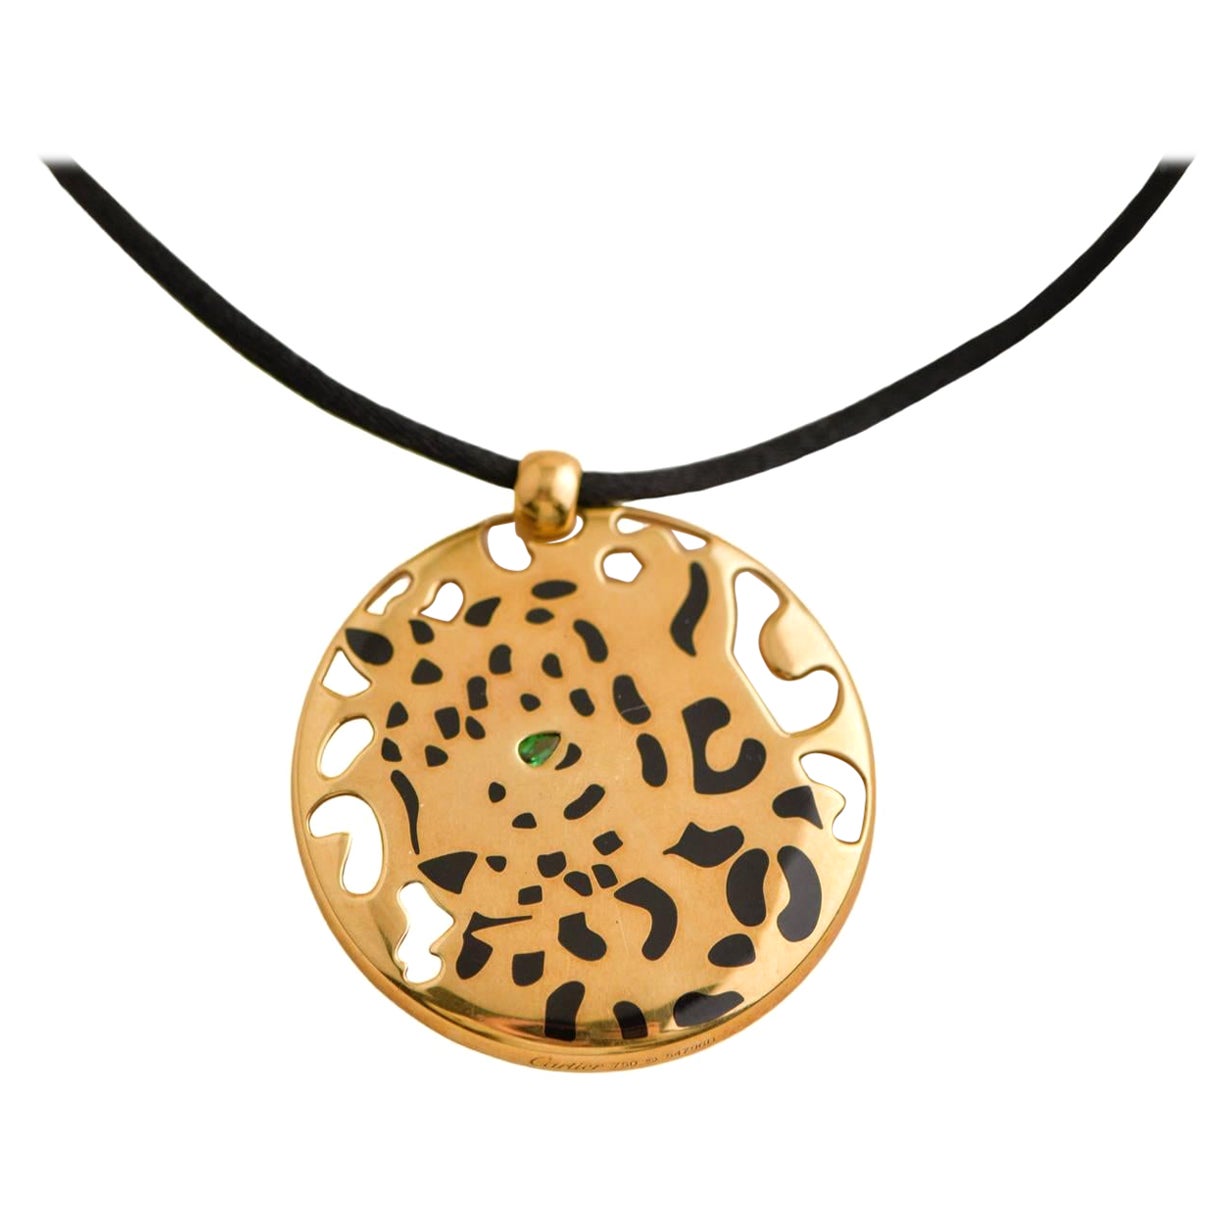 Cartier Gelbgold Emaille Tsavorit Panthere Anhänger Kordel Halskette